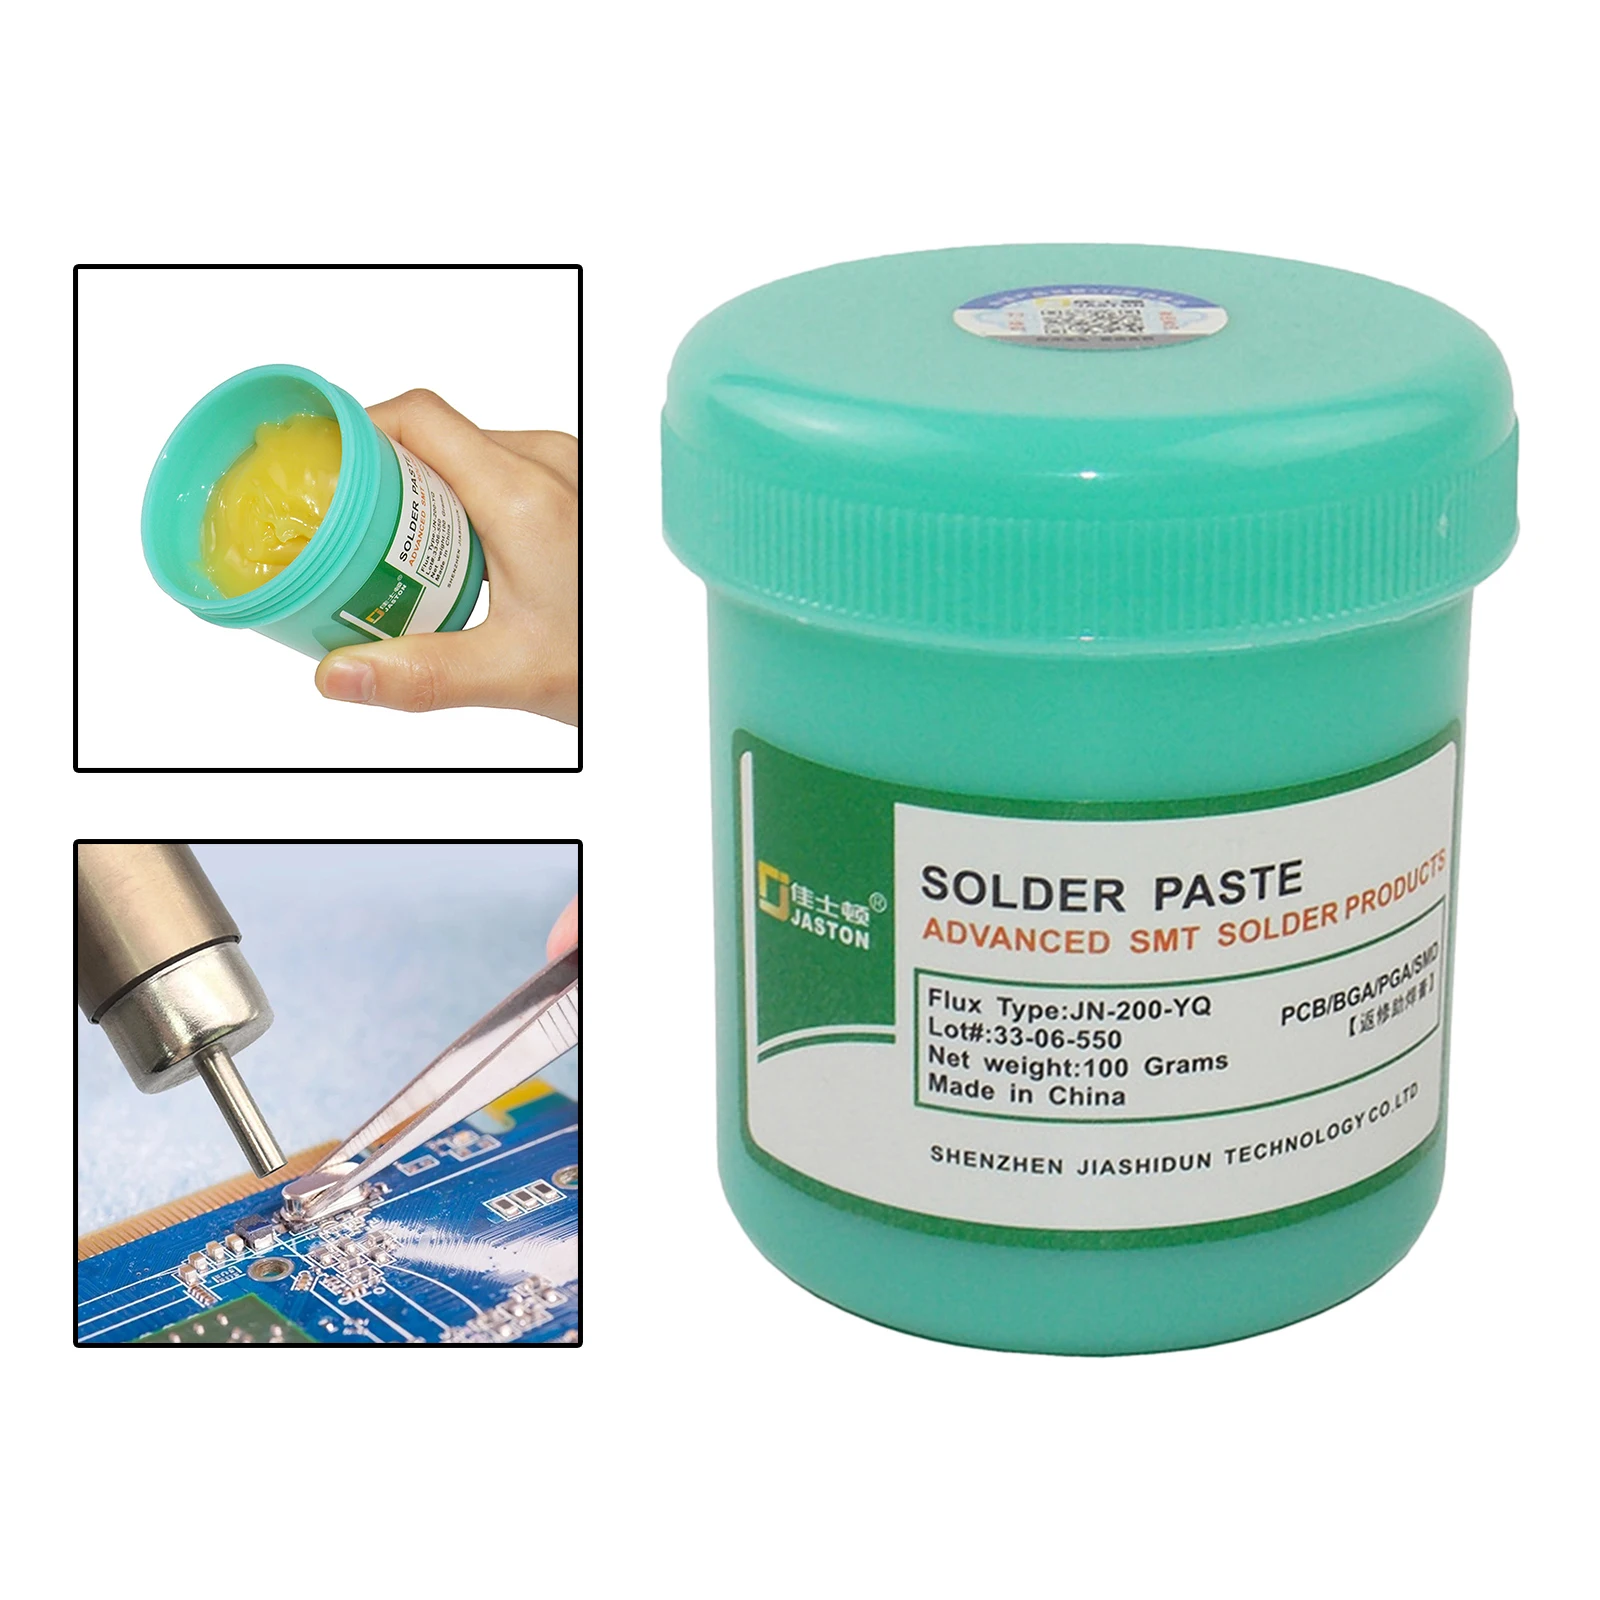 Soldering Paste Mild Environmental Soldering Paste Flux Parts Welding Soldering Gel Tool for Metalworking